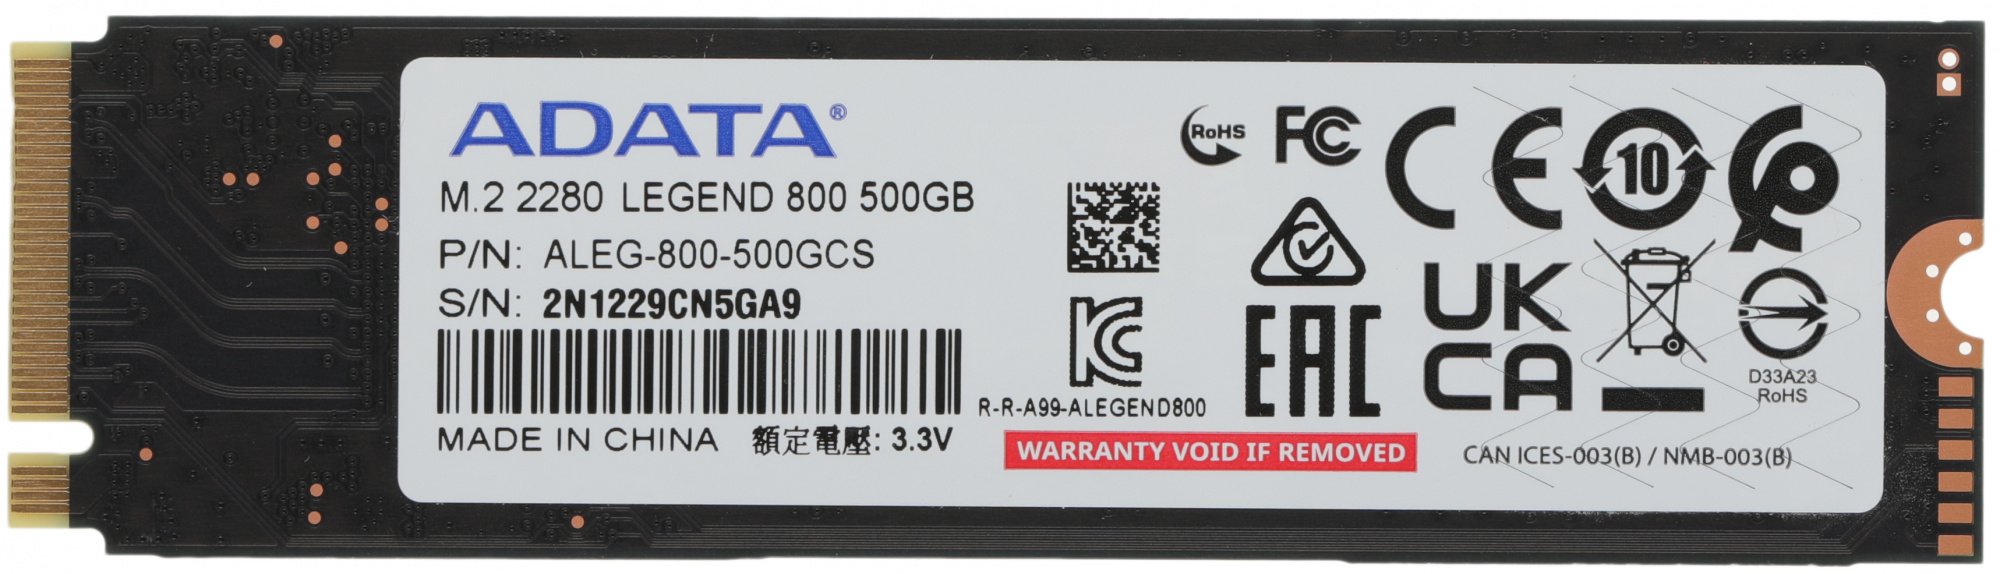 SSD  A-Data Legend 800 ALEG-800-500GCS 500, M.2 2280, PCIe 4.0 x4,  NVMe,  M.2